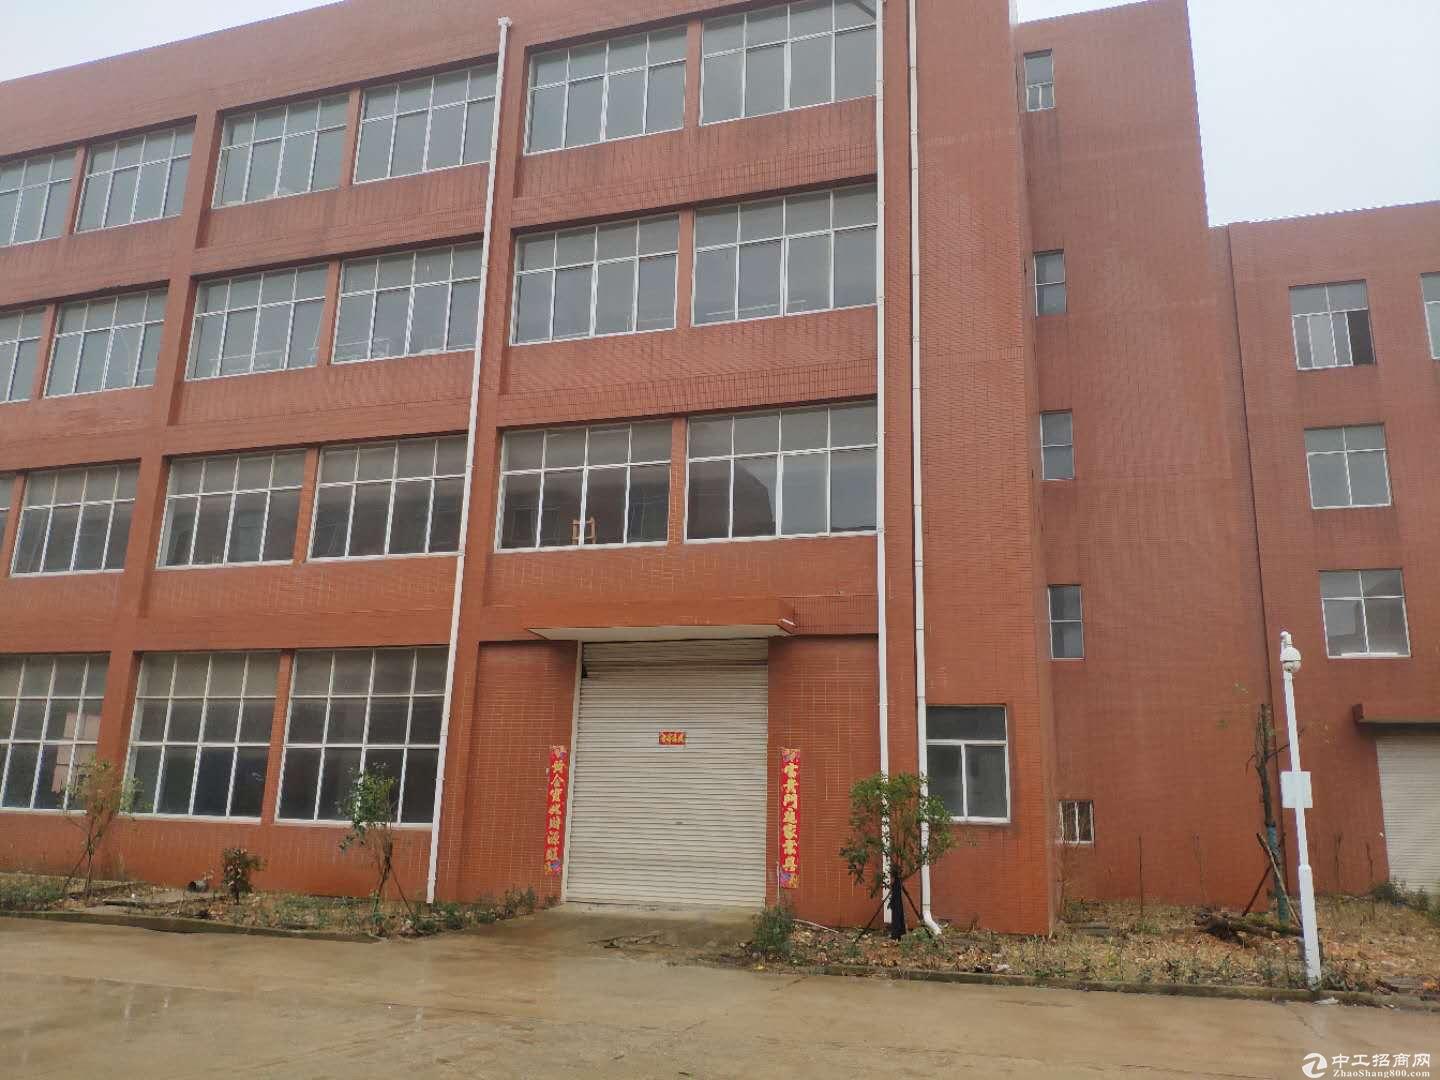 阳逻厂房出售 健强科技产业园2000平米独栋钢构厂房出售 可过户